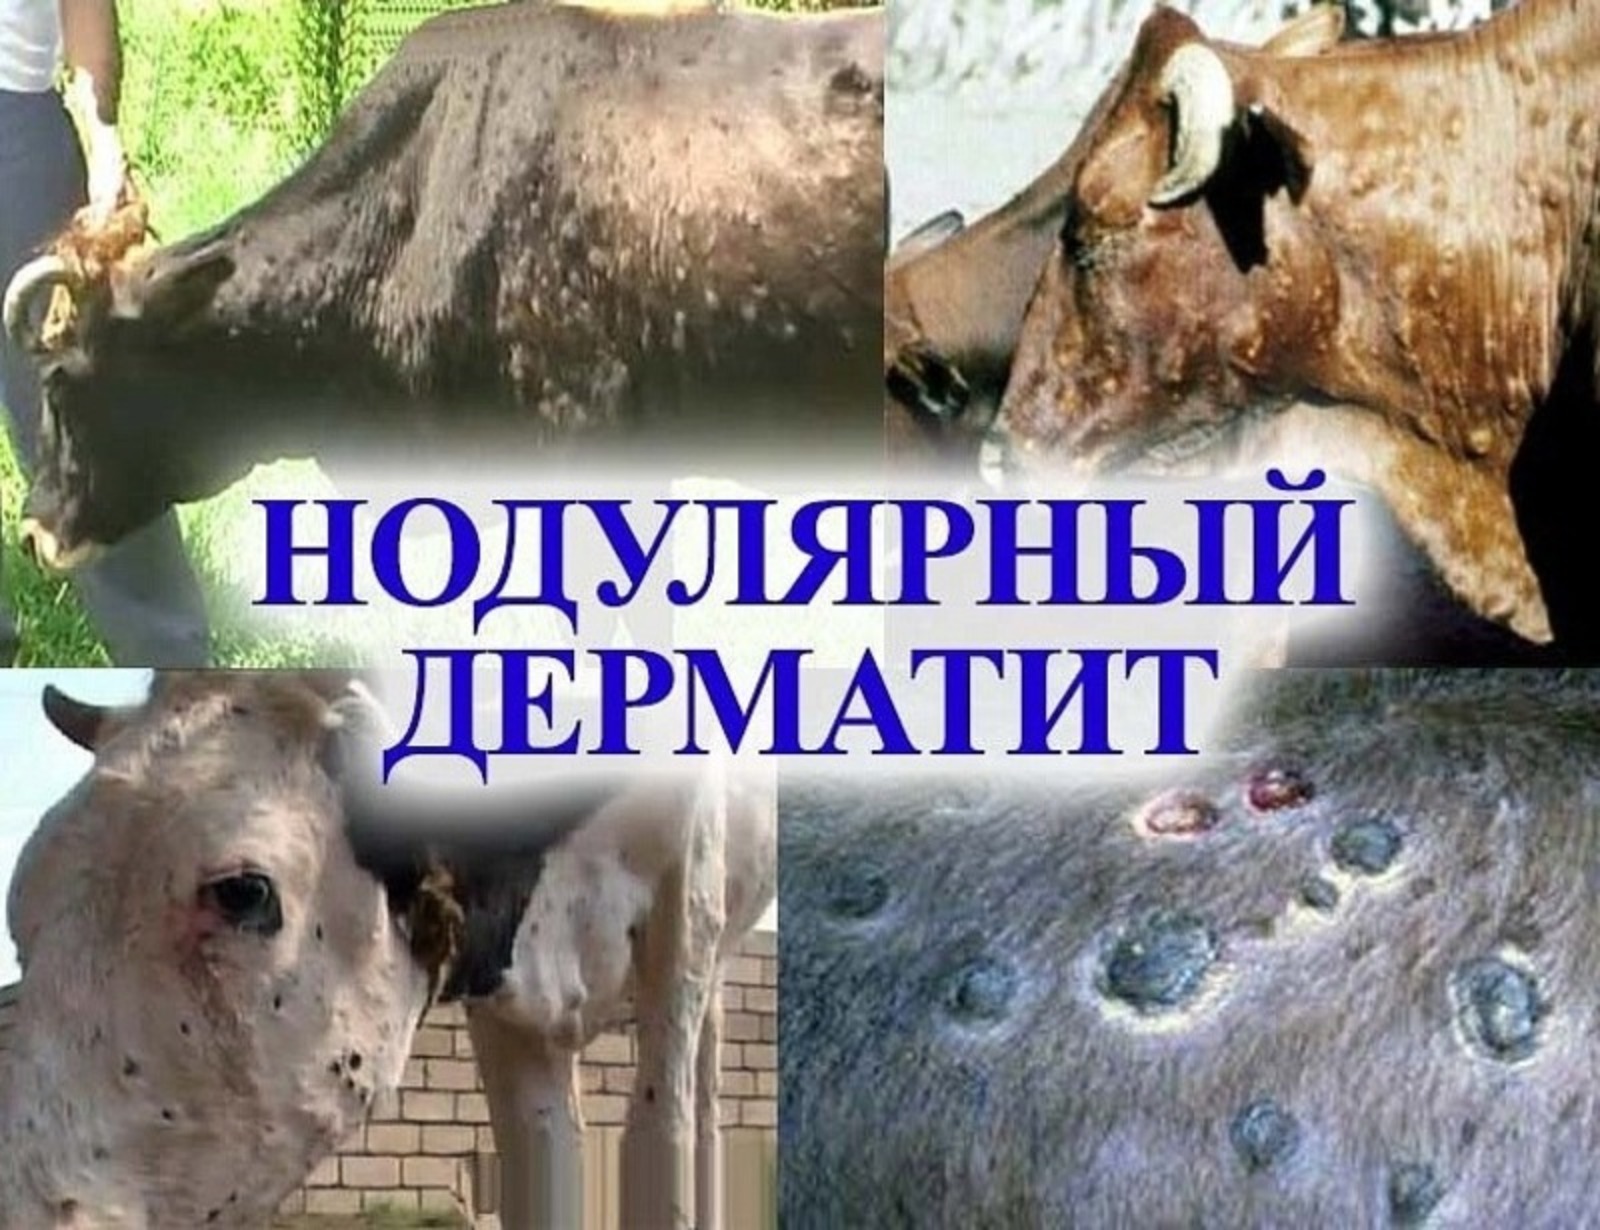 В некоторых районах Башкирии введён карантин из-за угрозы заболевания крупного рогатого скота и птицы